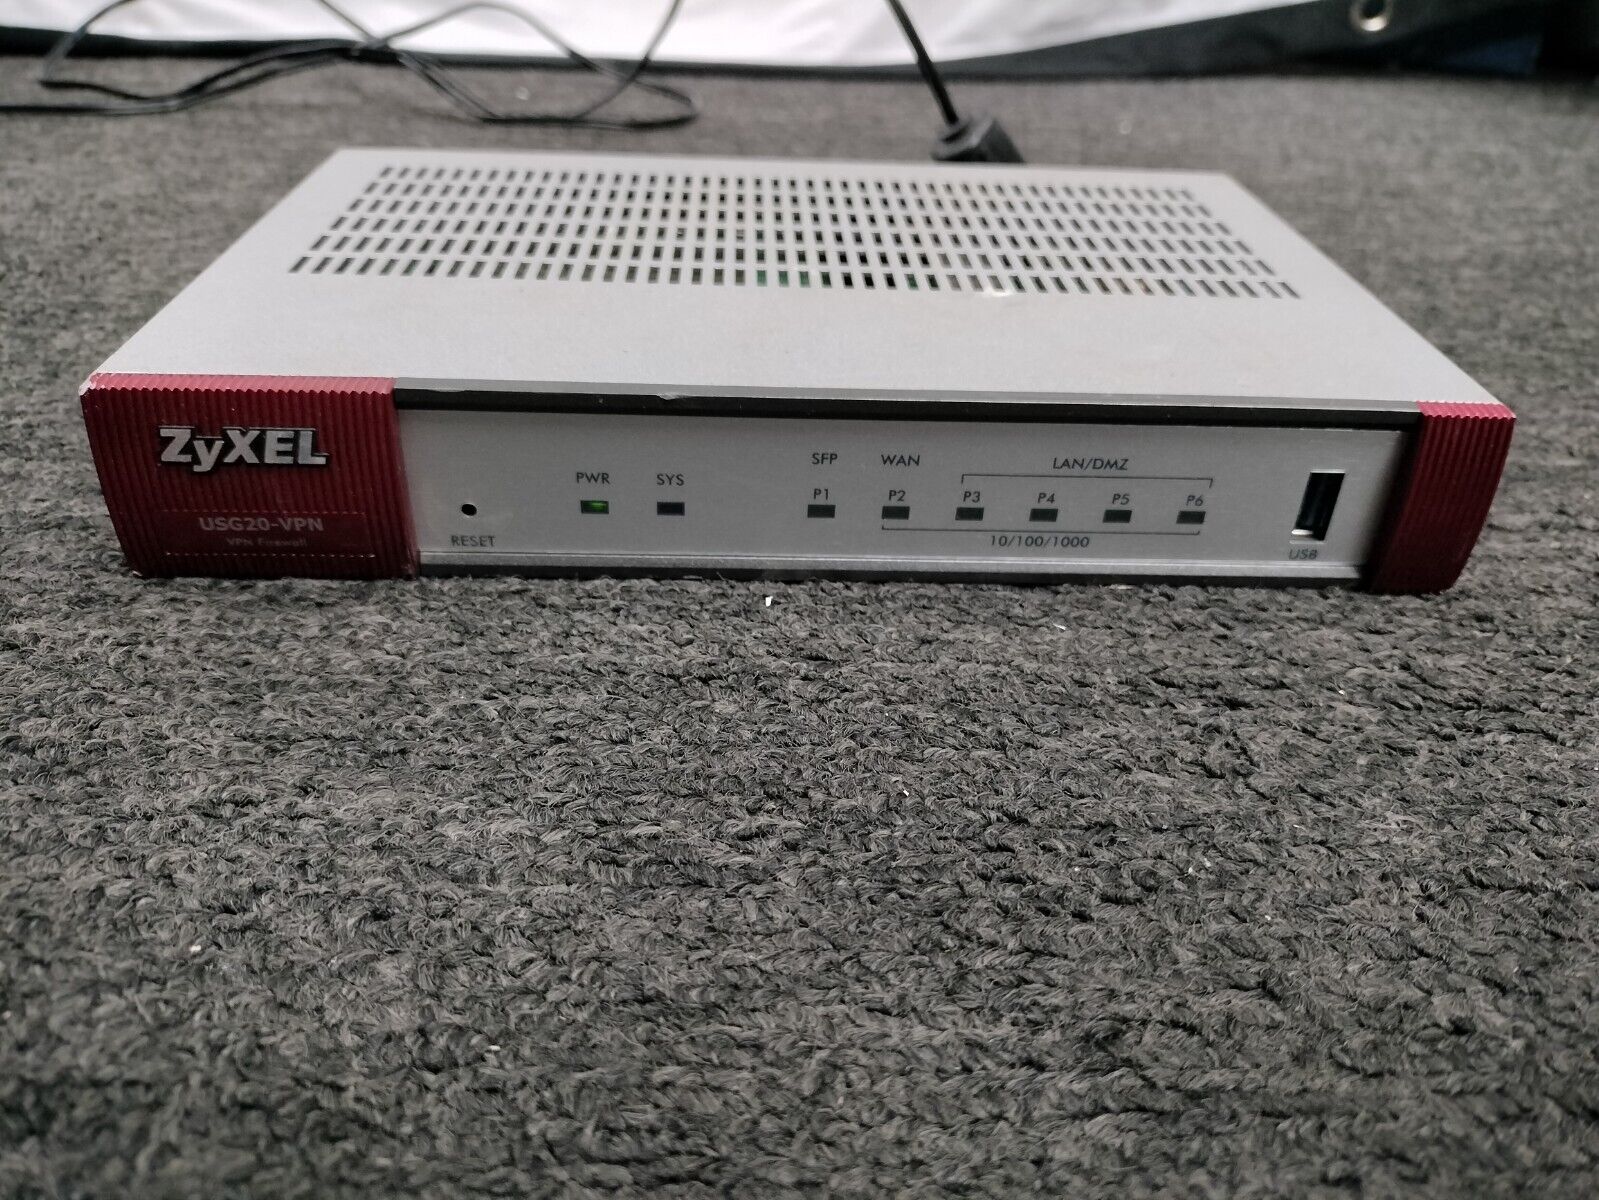 Zyxel USG20-VPN VPN Firewall (No Power Adapter) *READ*